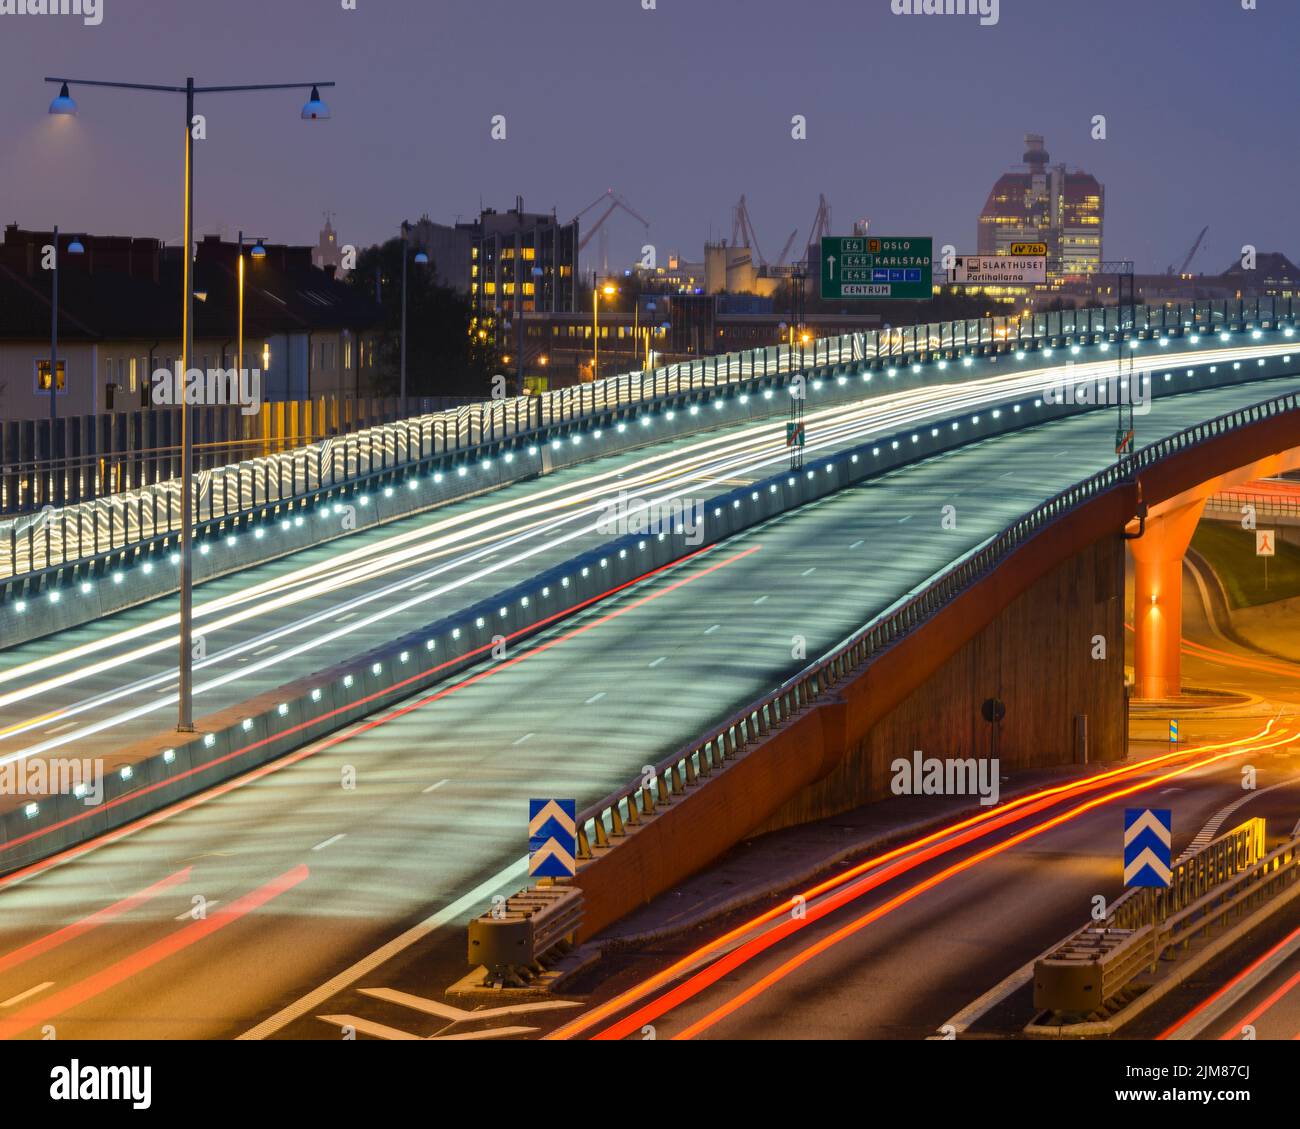 Le soir, le pont-carte de la ville est illuminé et les sentiers sont éclairés Banque D'Images